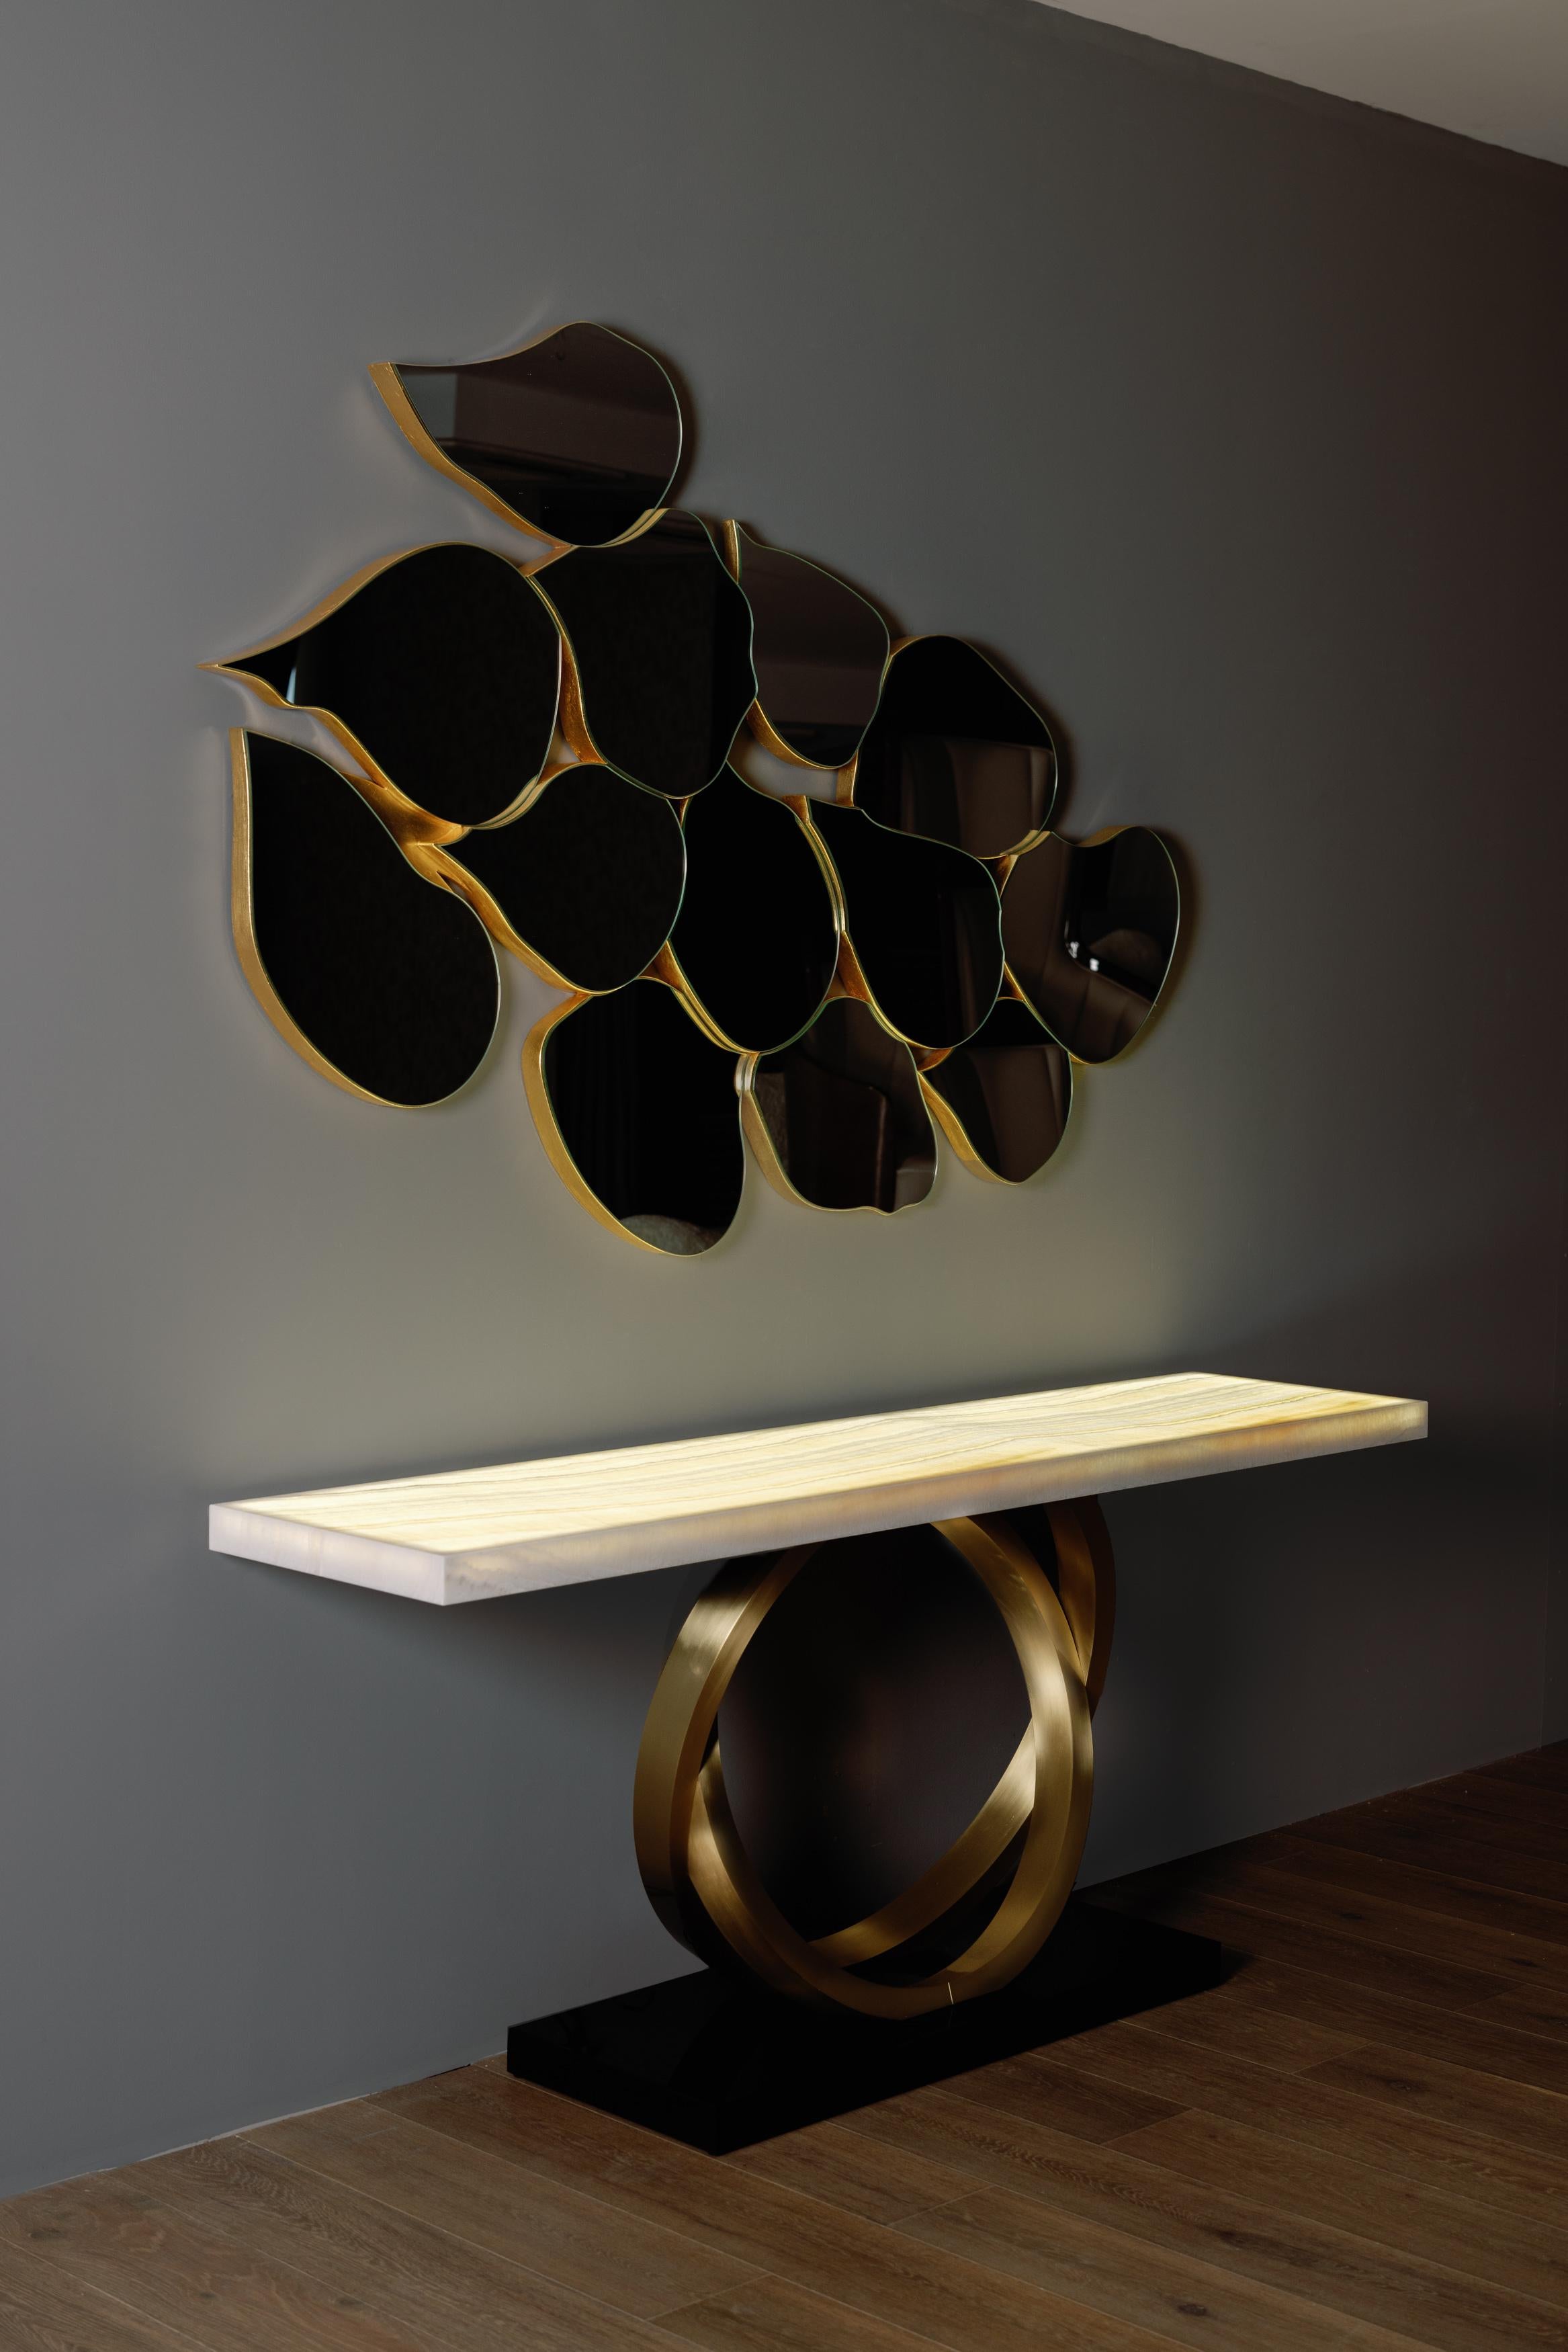 Table console Armilar, Collection S, fabriquée à la main au Portugal - Europe par GF Modern.

La table console Armilar présente un design moderne qui rend hommage à la sphère armillaire portugaise, un instrument qui permettait aux navigateurs